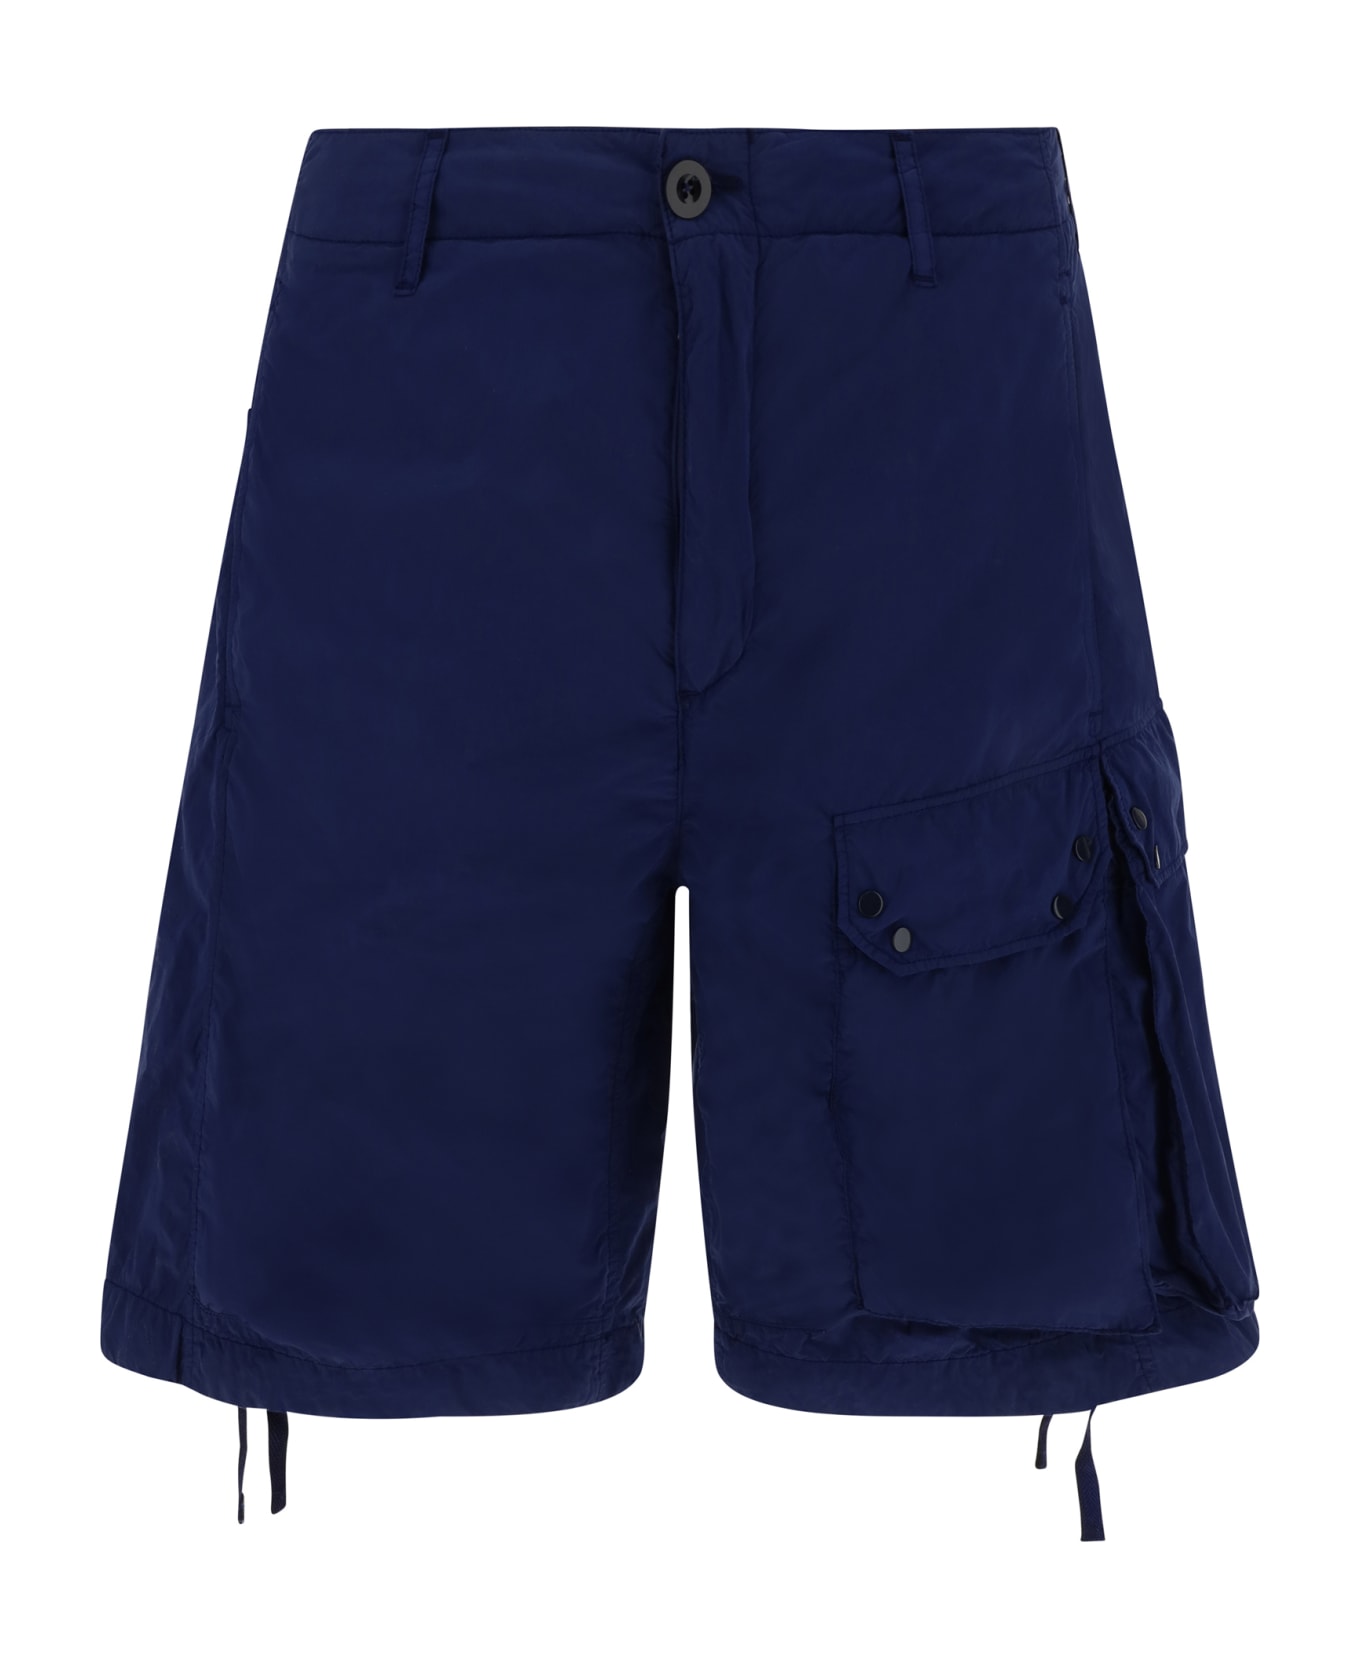 Ten C Shorts - Blu Notte